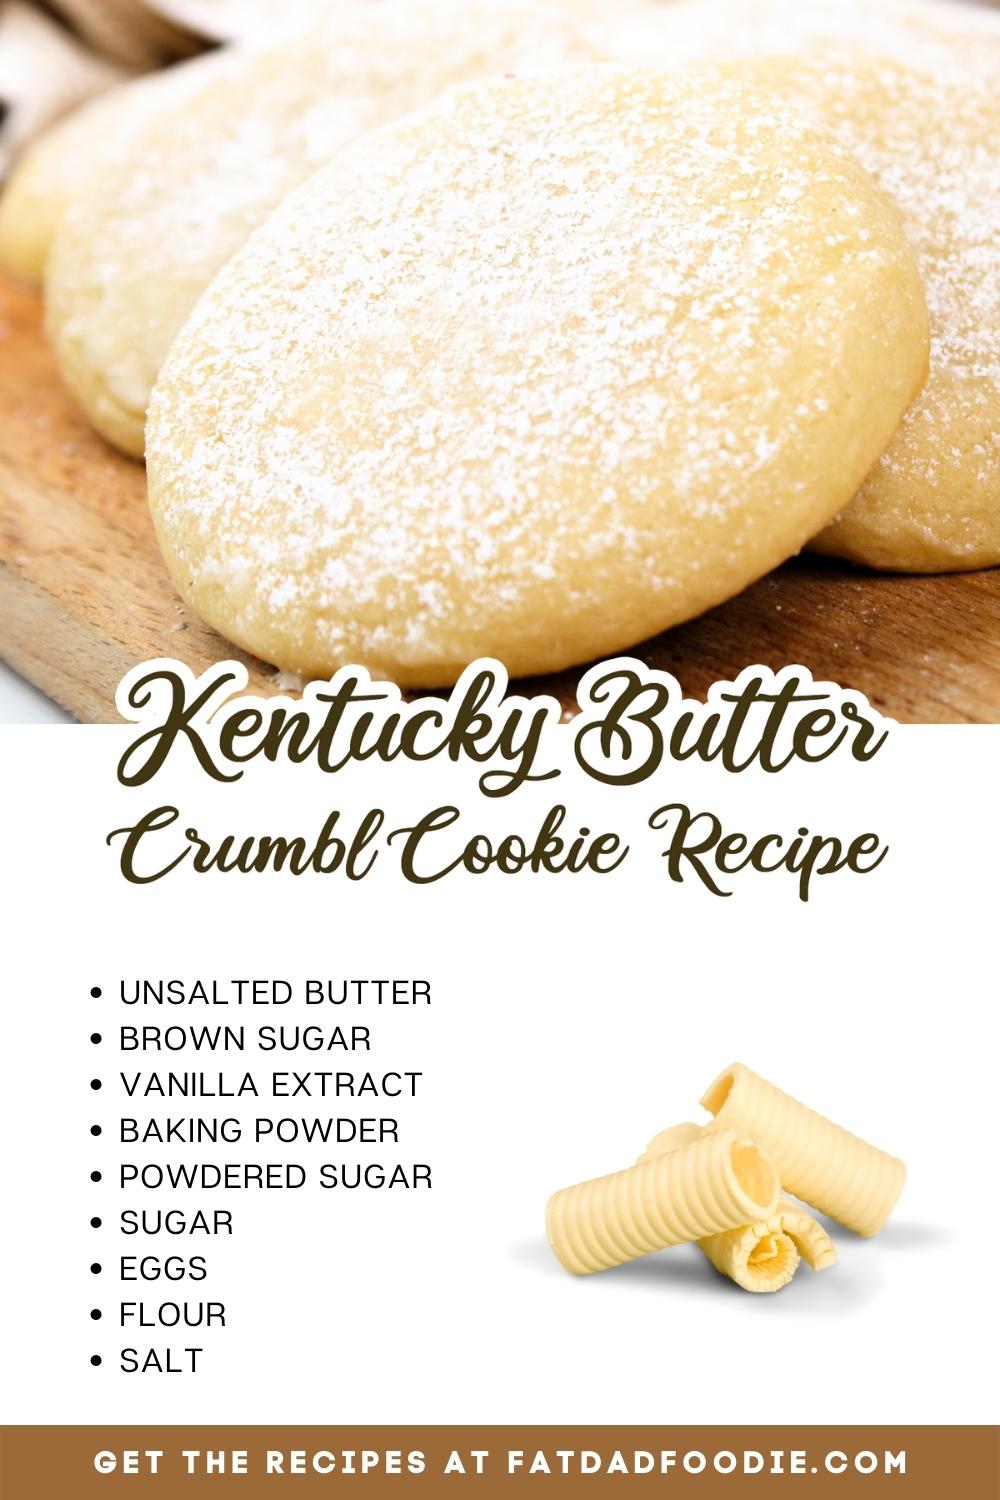 kentucky butter crumbl cookie ingredient list